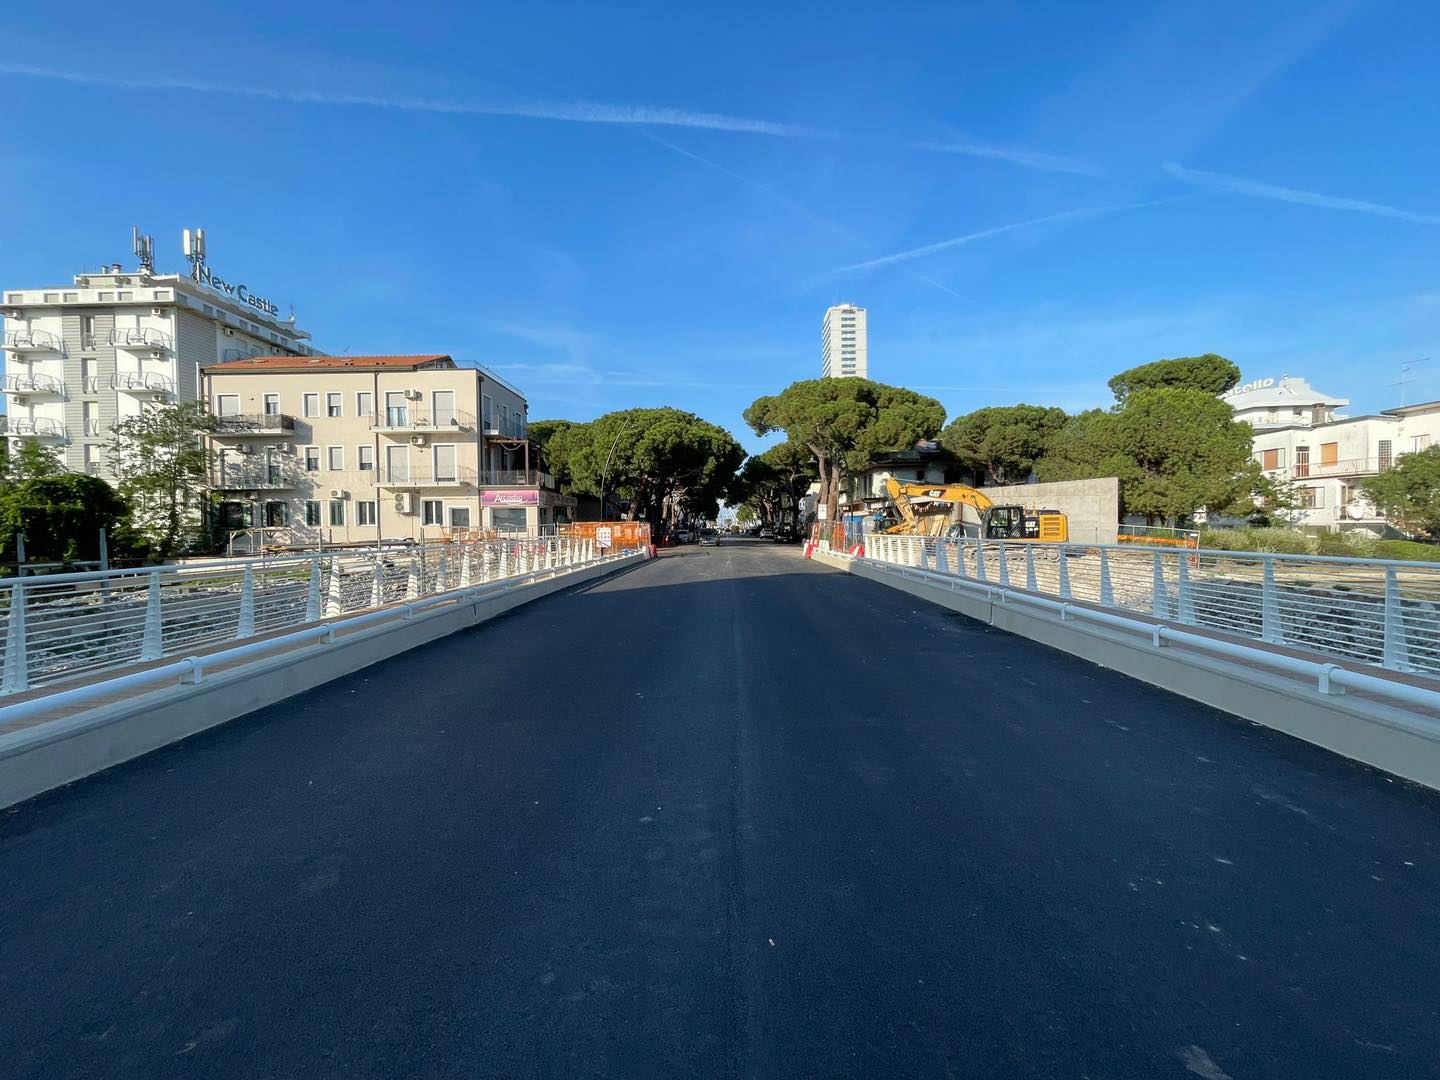 Ha riaperto ufficialmente il ponte di Viale Roma